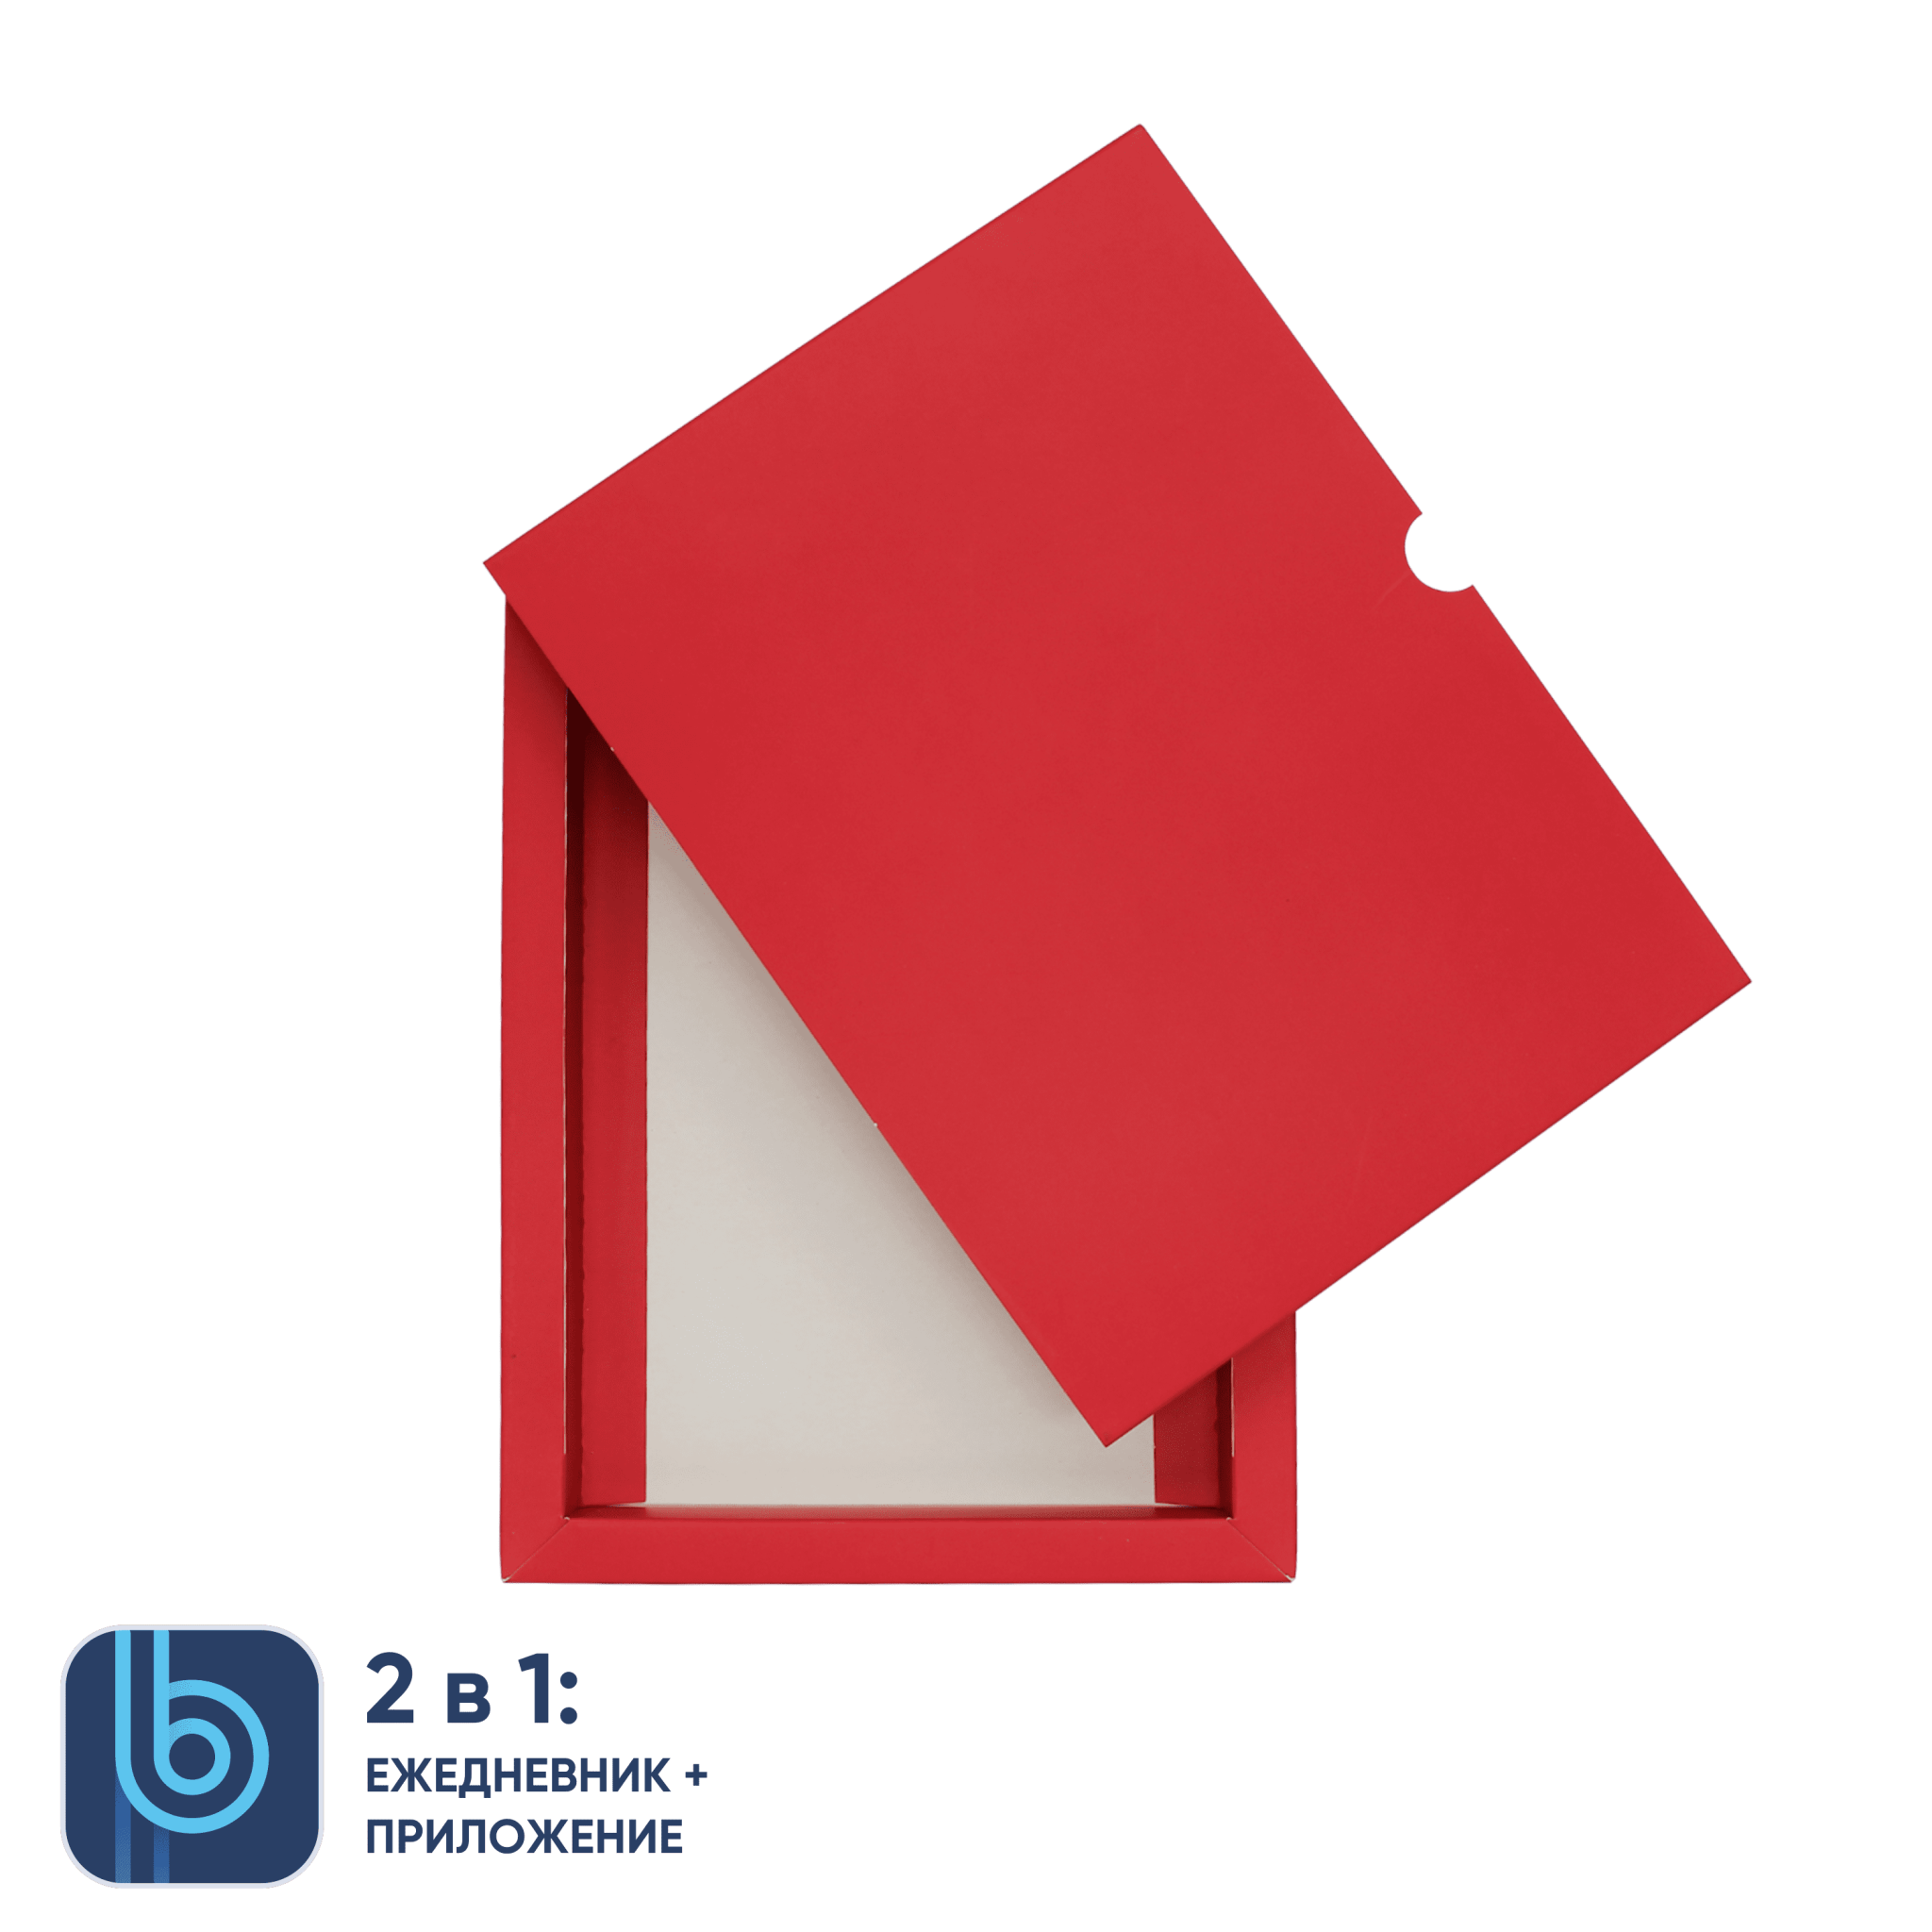 Коробка под ежедневник Bplanner (красный), красный, картон